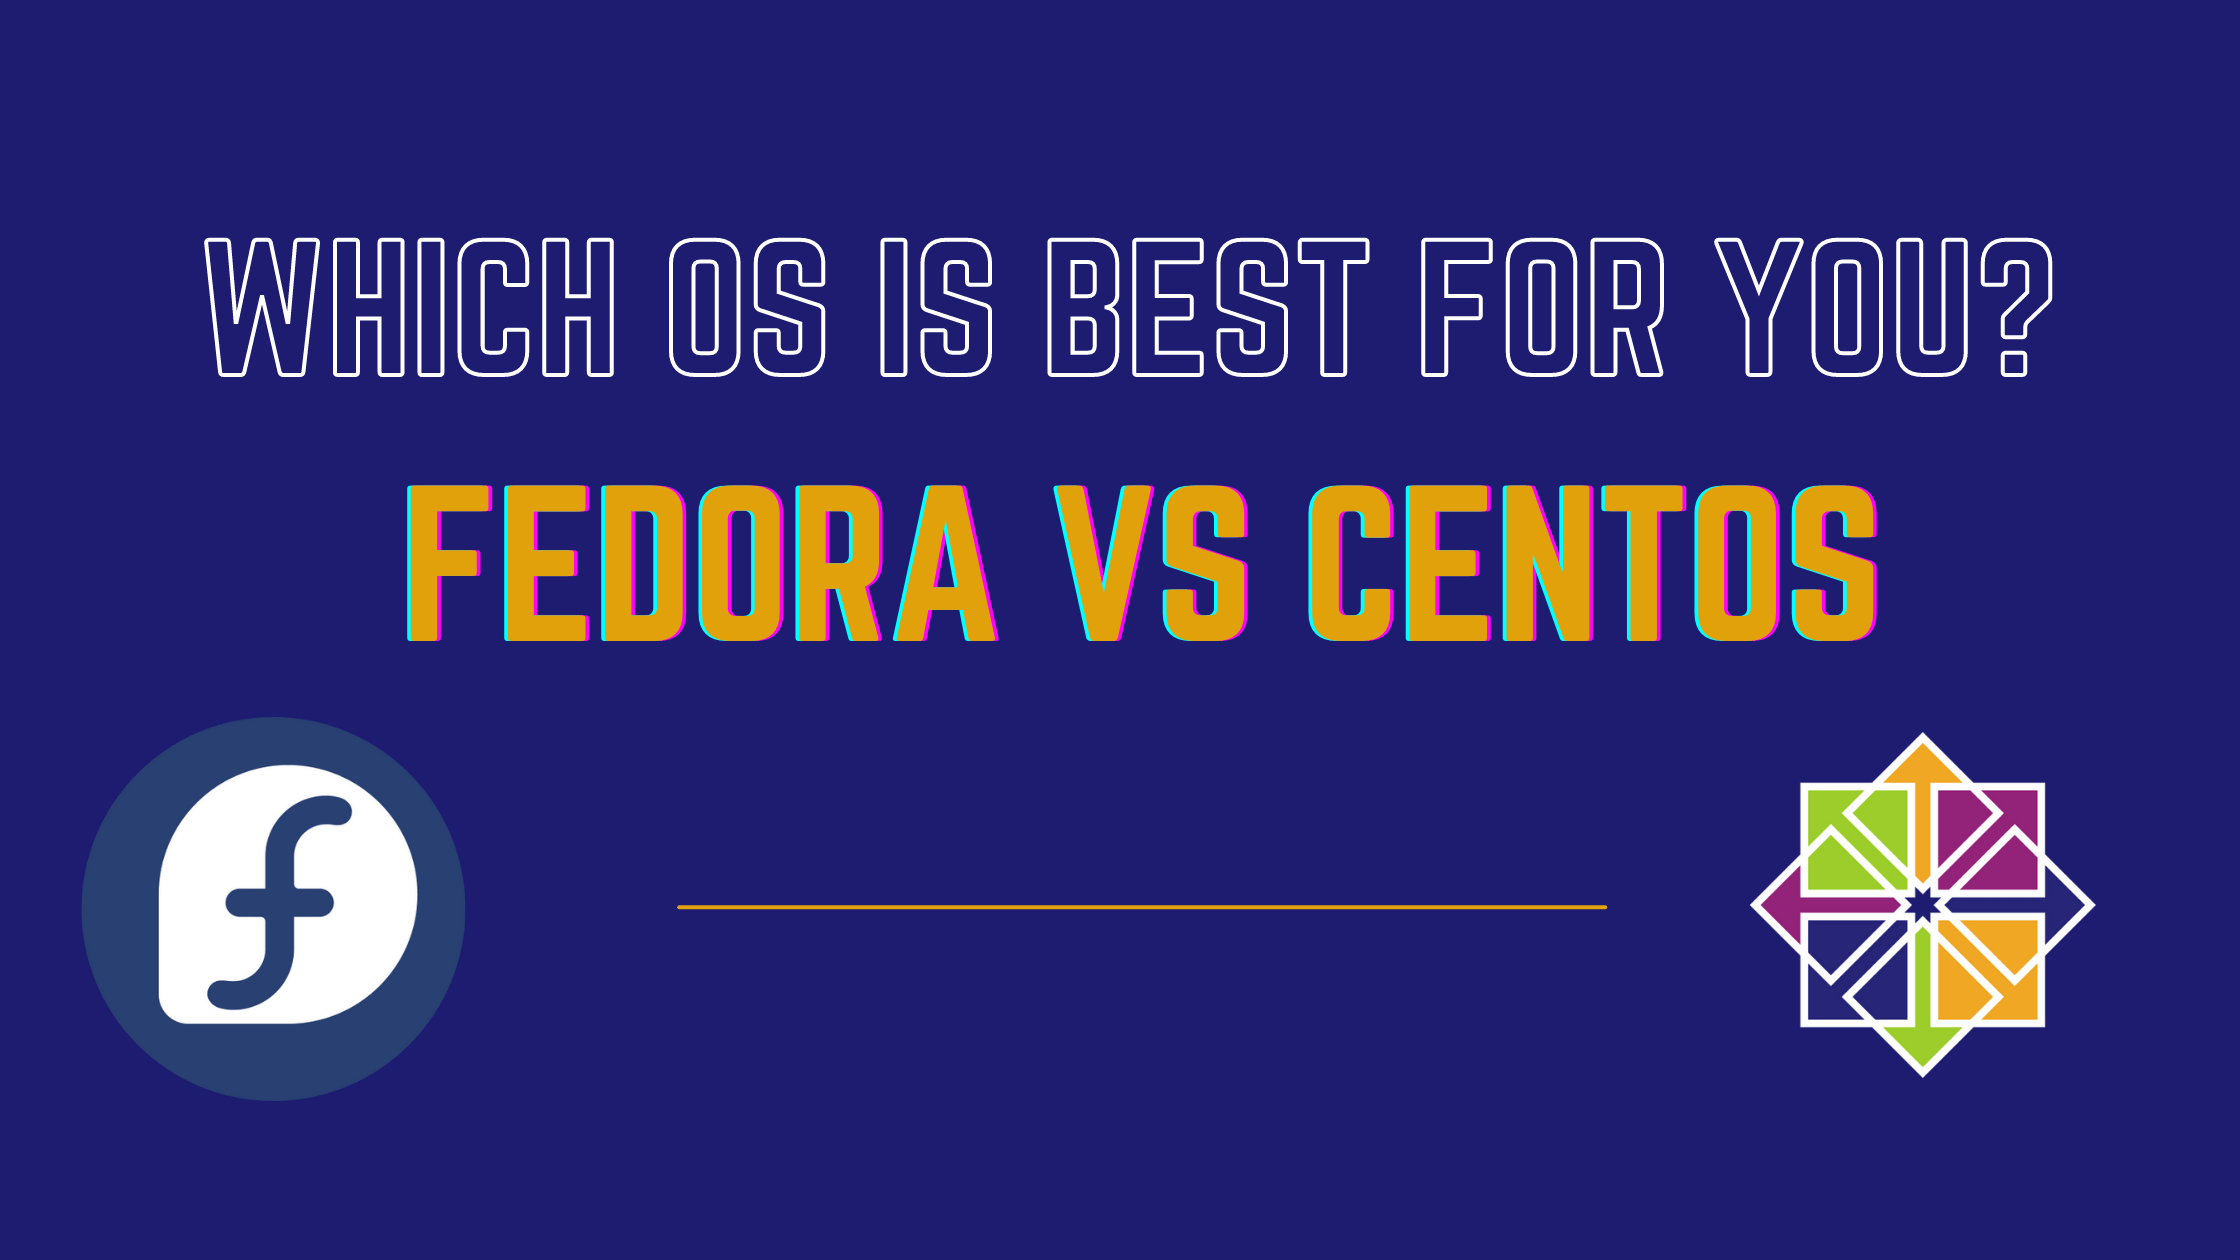 Fedora vs Centos